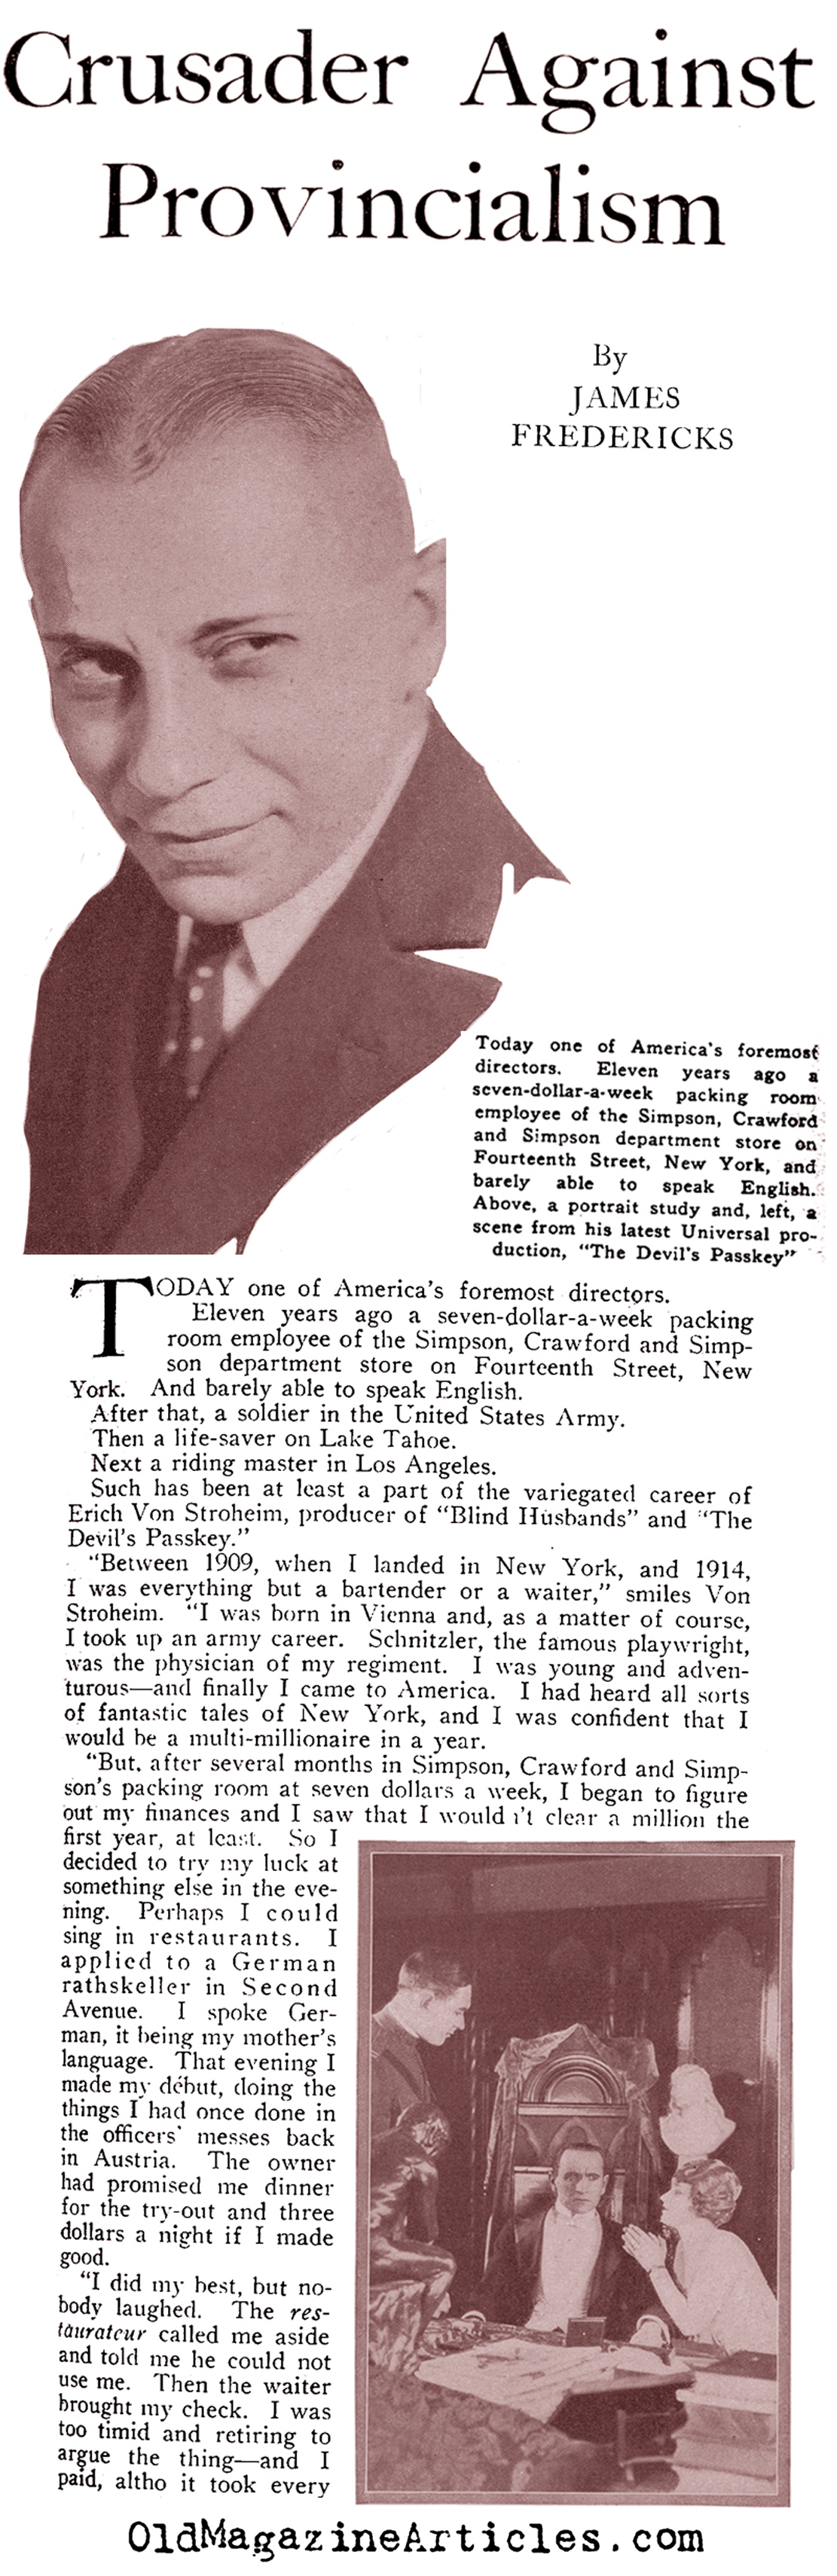 Erich von Stroheim: an Immigrant's Story (Motion Picture Magazine, 1920)